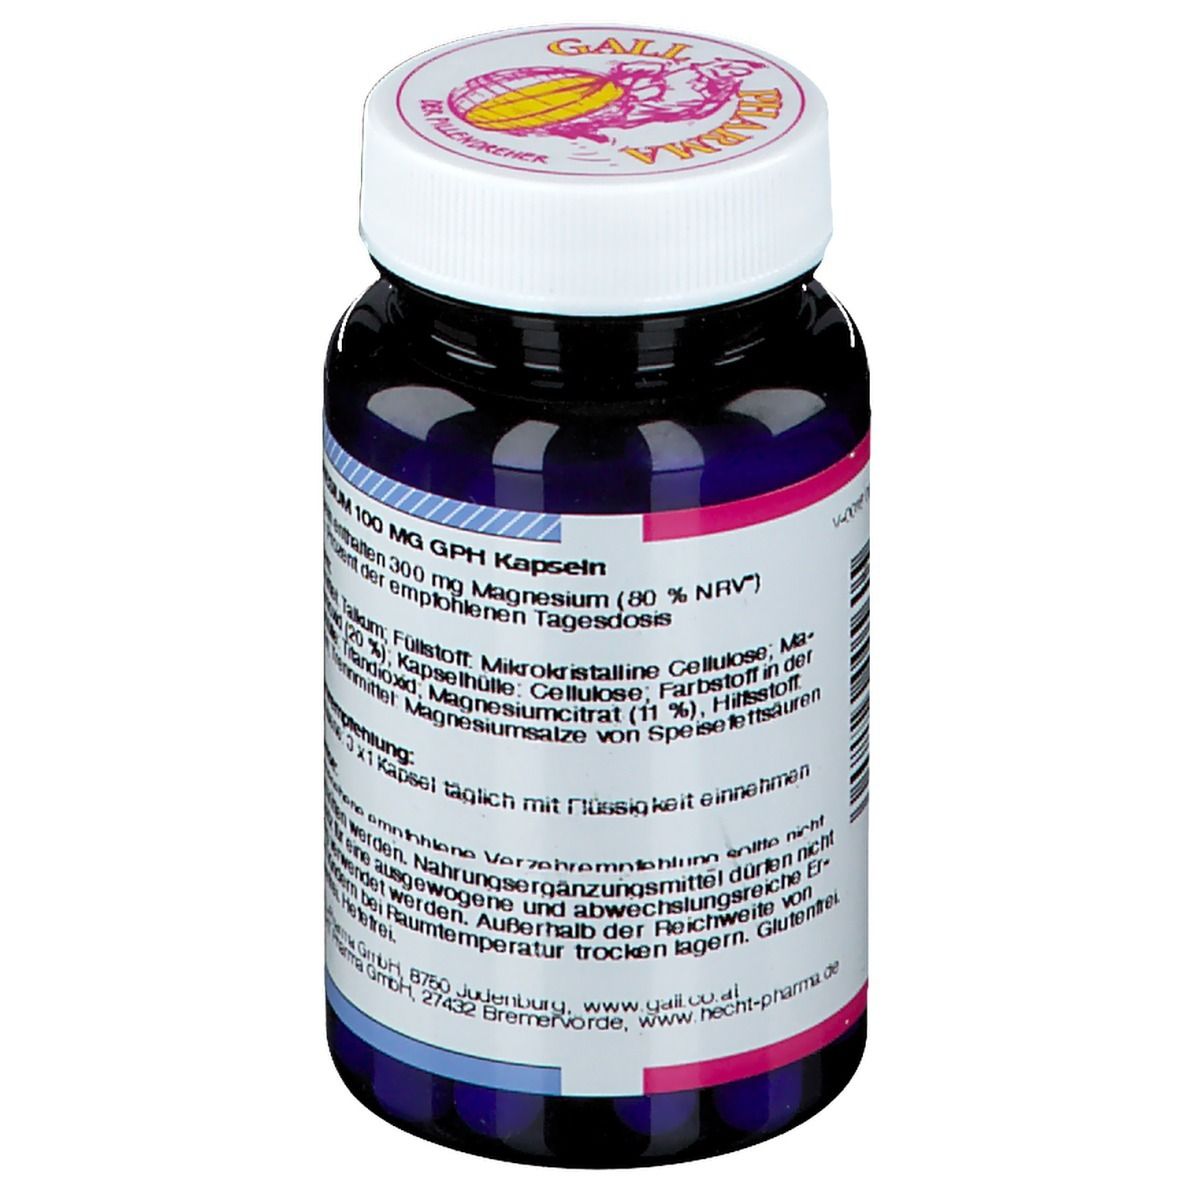 GALL PHARMA Magnesium 100 mg GPH Kapseln